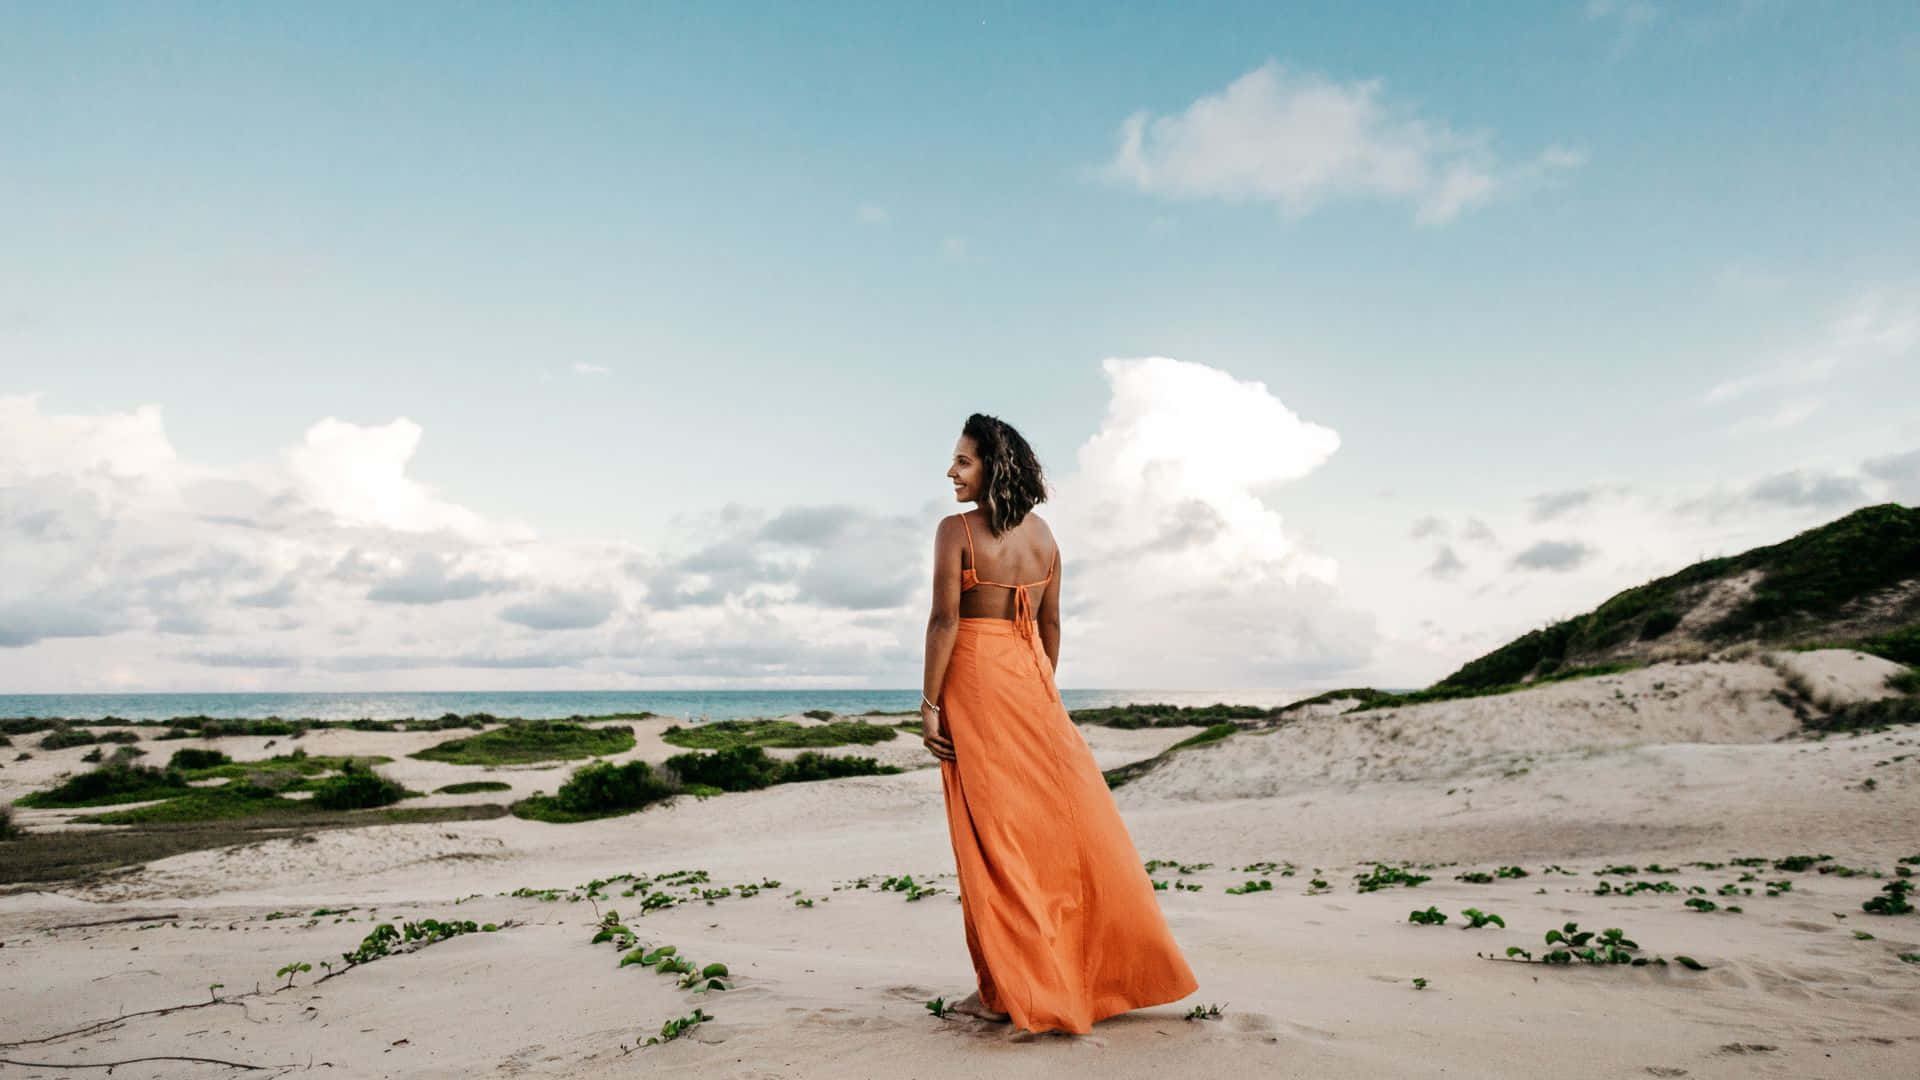 Enkvinna I En Orange Klänning Står På Stranden